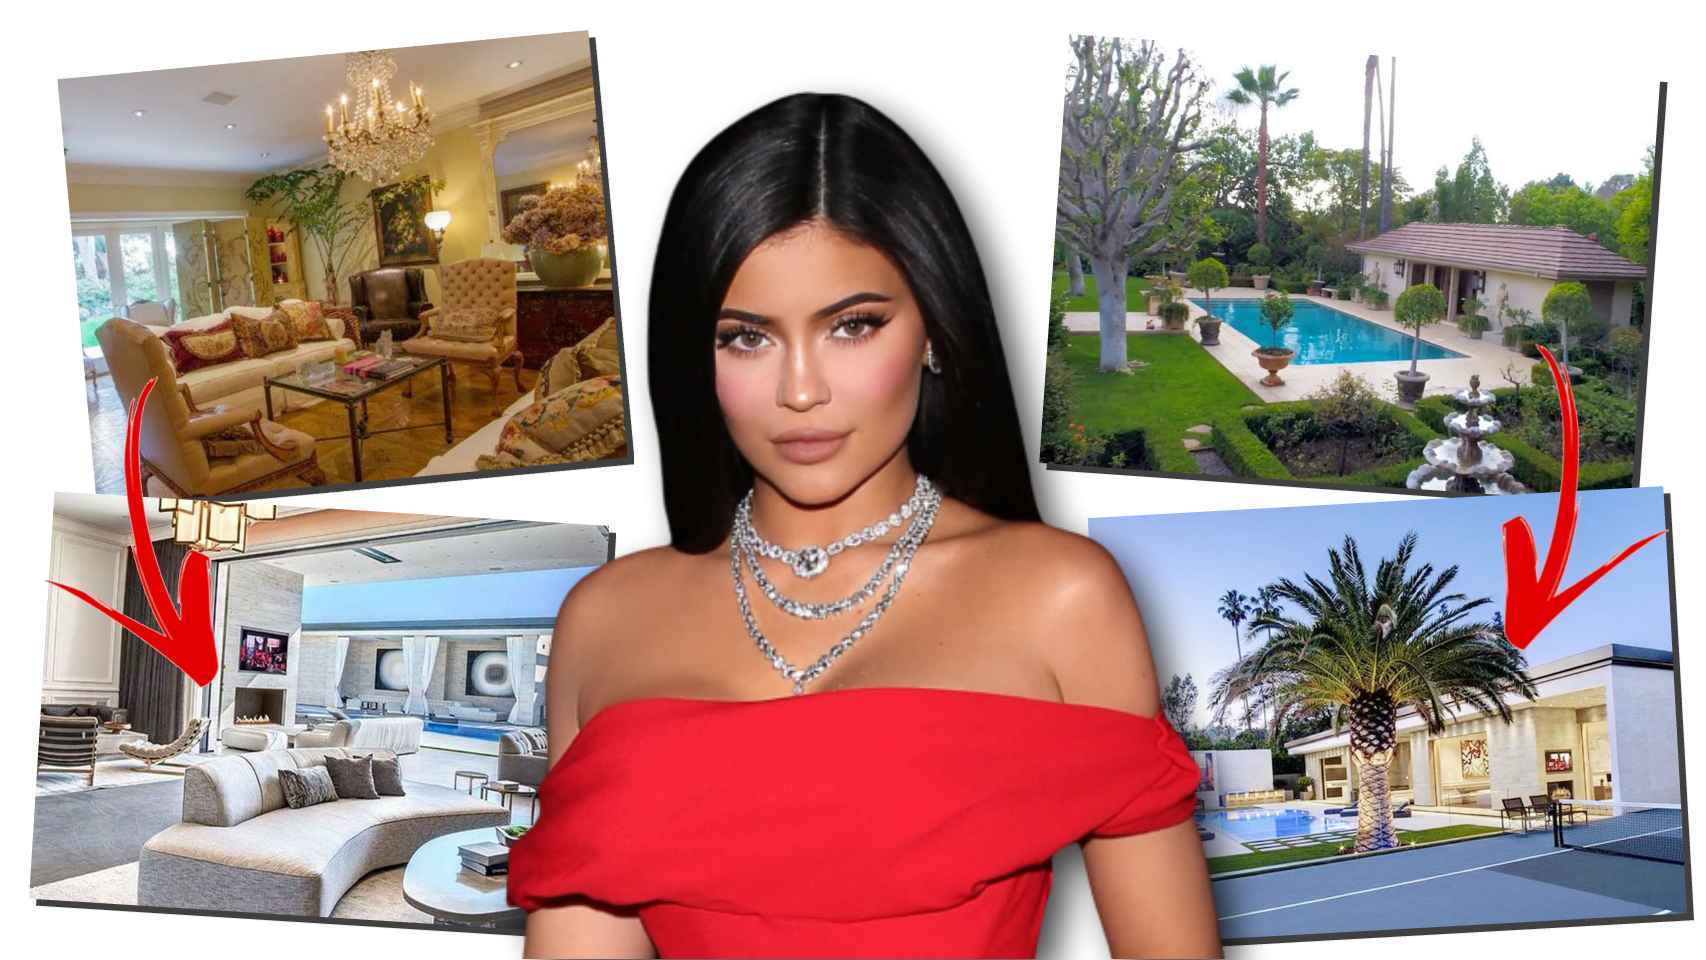 La nueva adquisición inmobiliaria de Kylie Jenner ha sorprendido a todos.